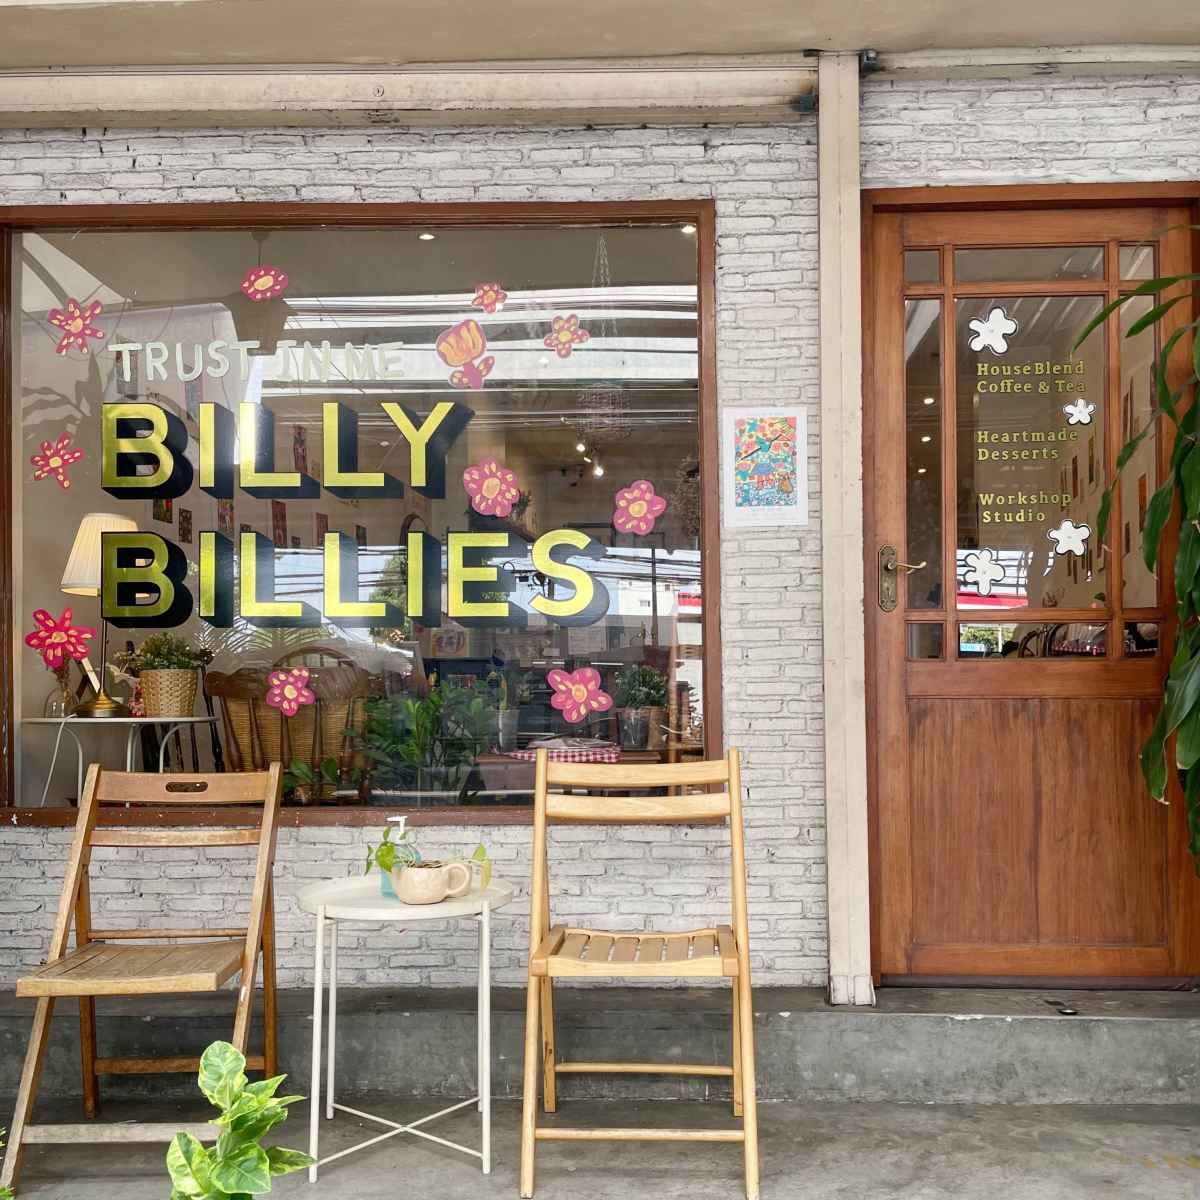 Billybillies Cafe